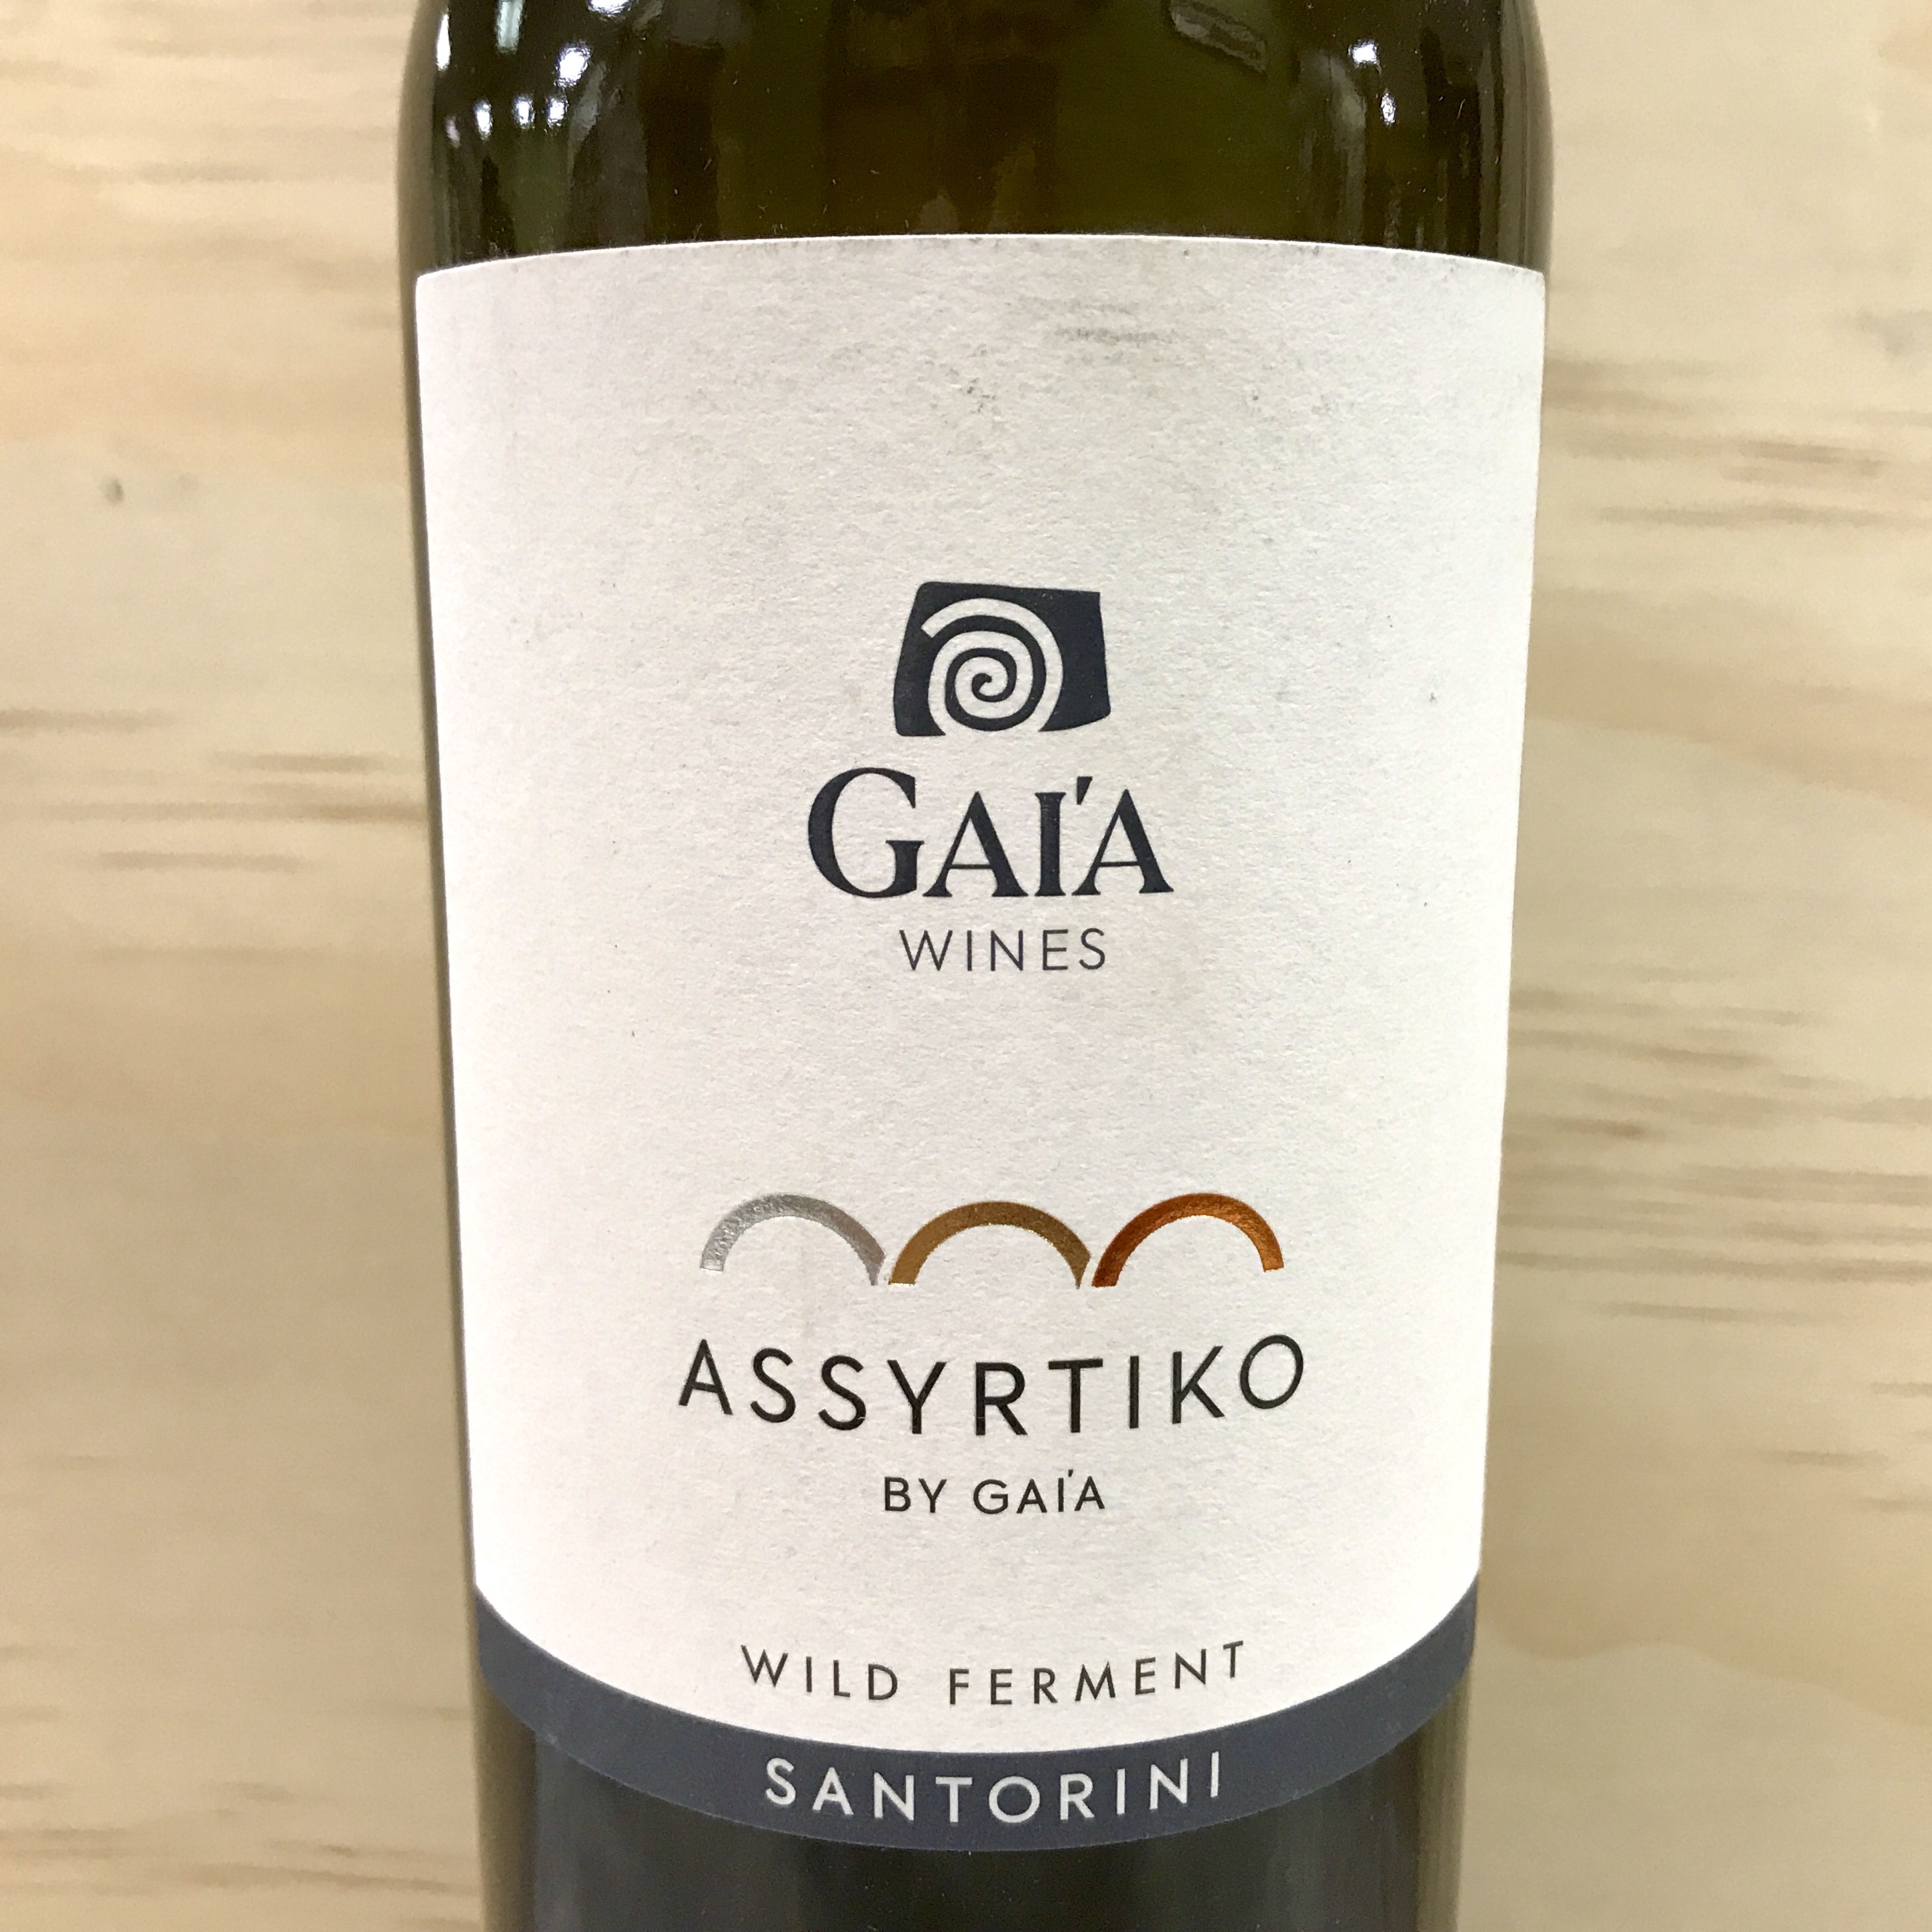 Gaia Assyrtiko wild ferment Santorini 2020